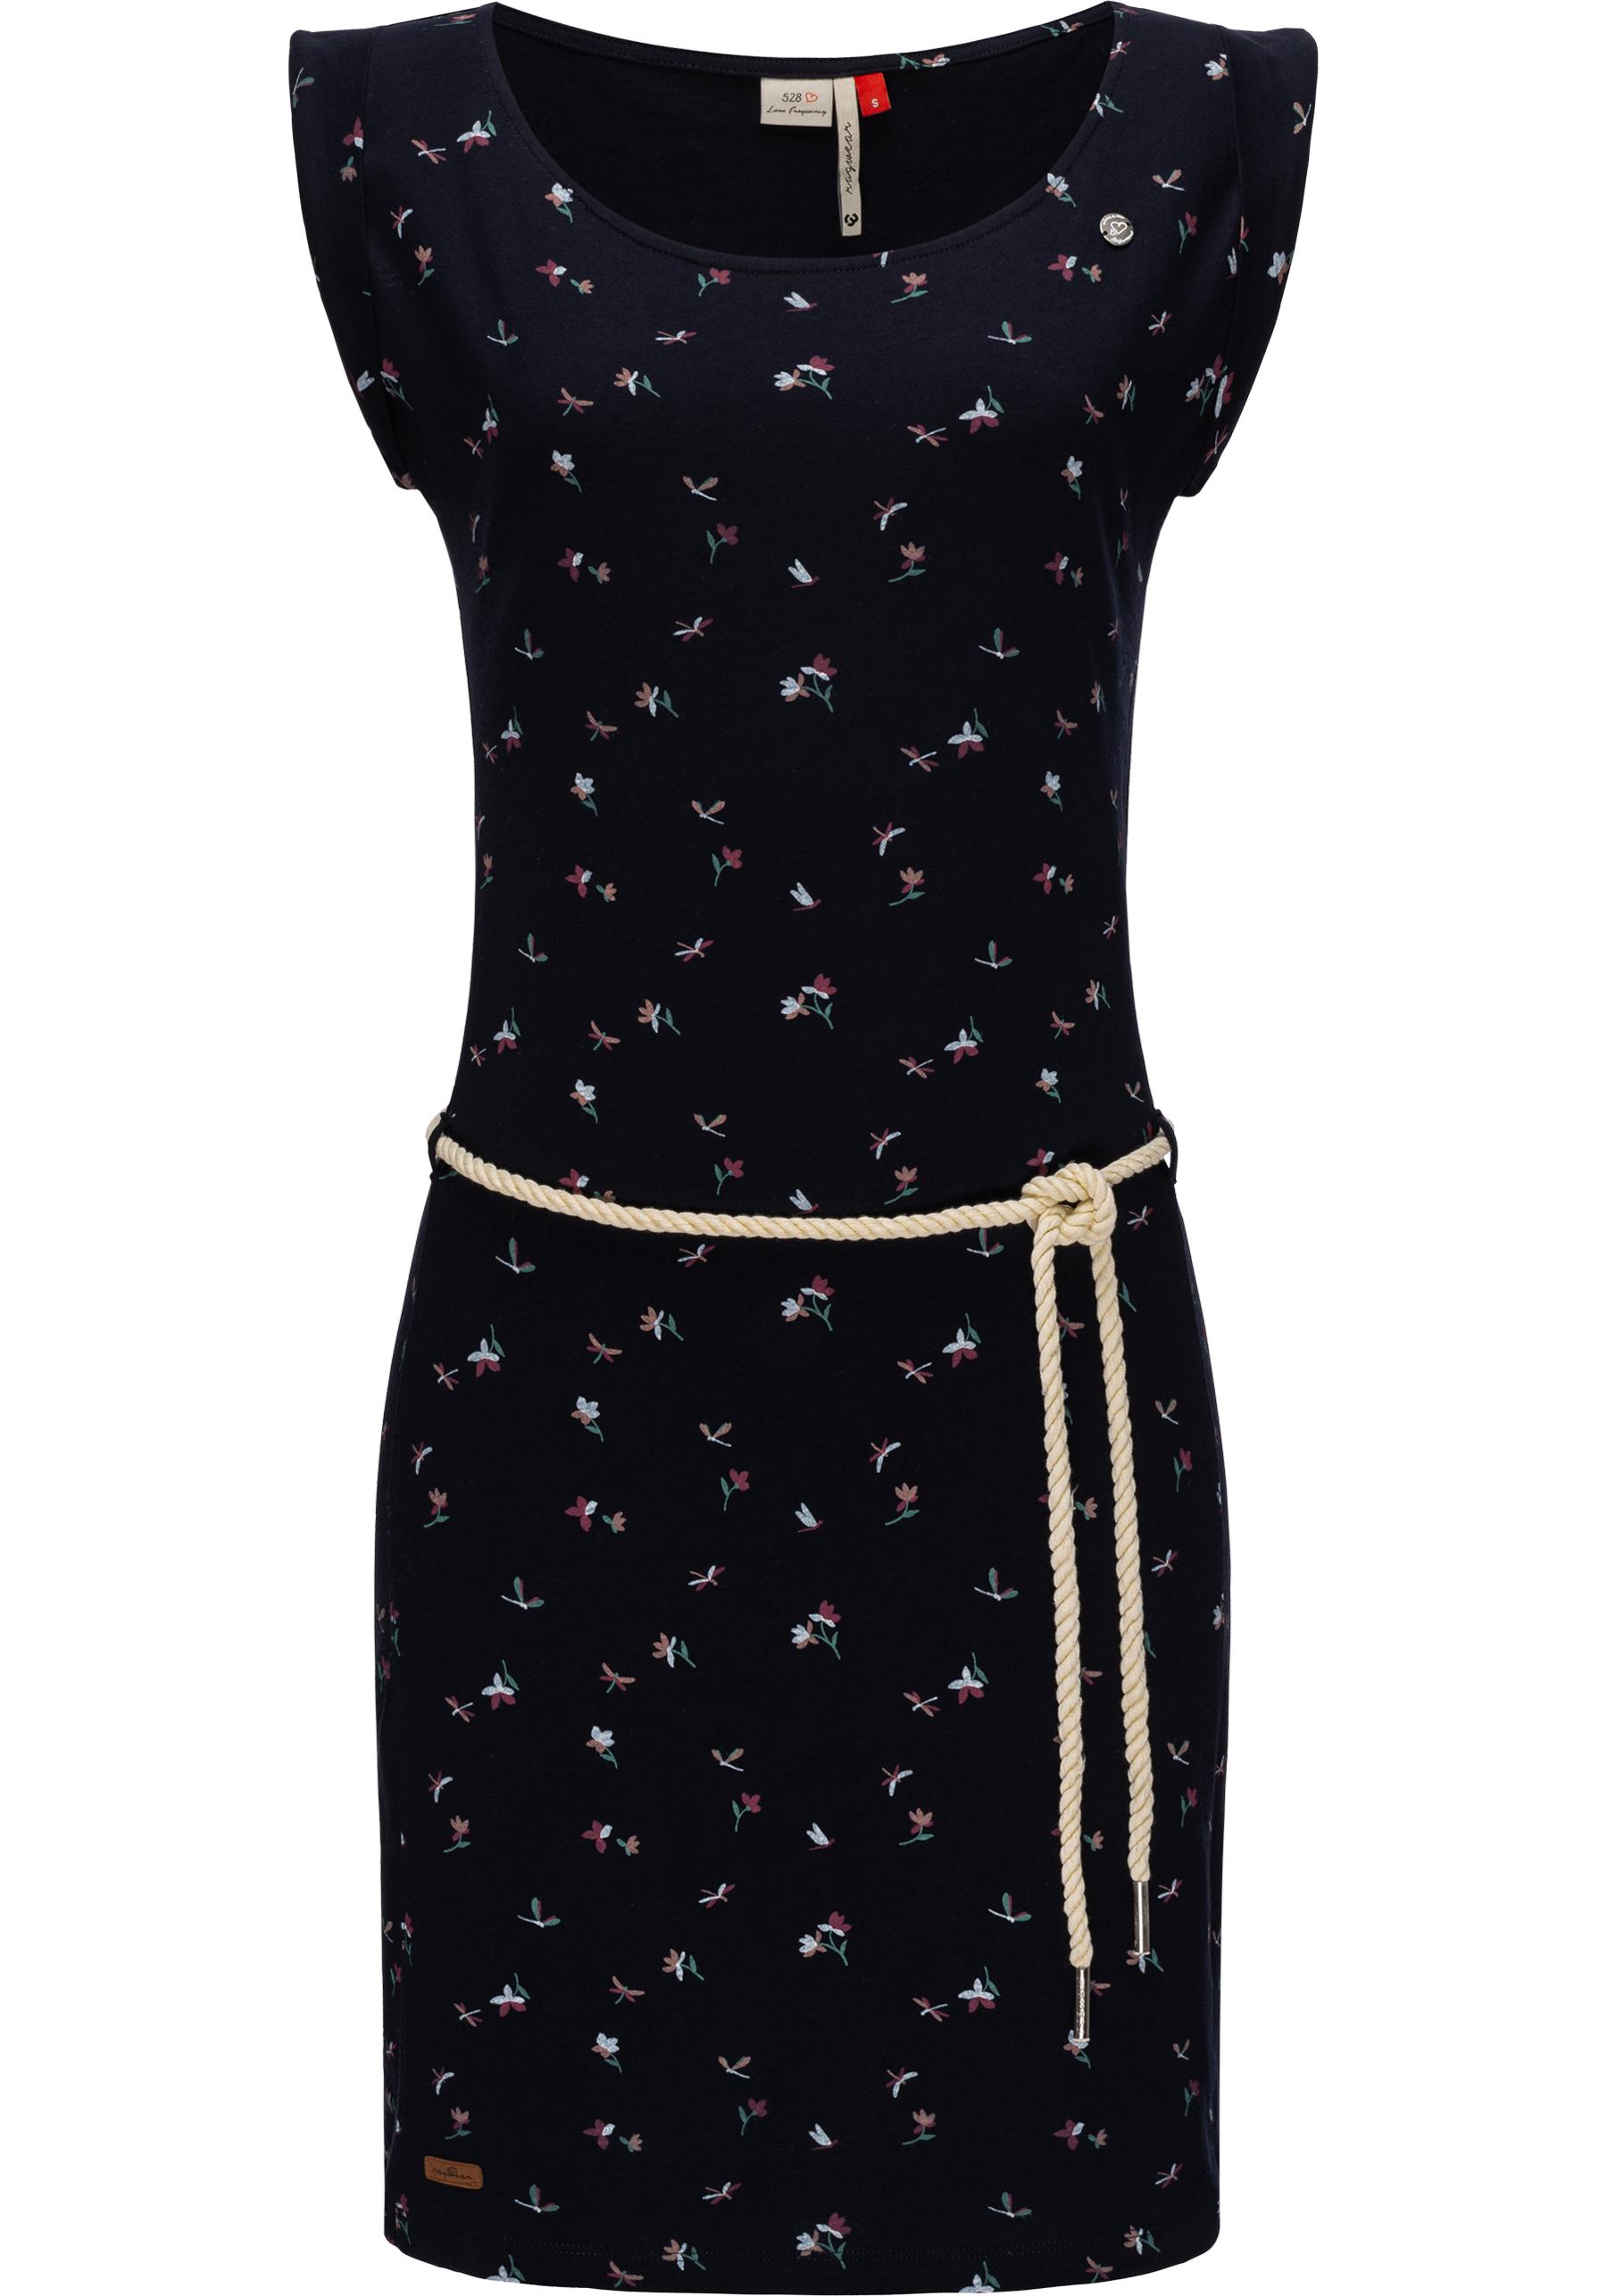 ragwear -  Jerseykleid "Tamy II", stylisches Shirtkleid mit süßem Print und Gürtel